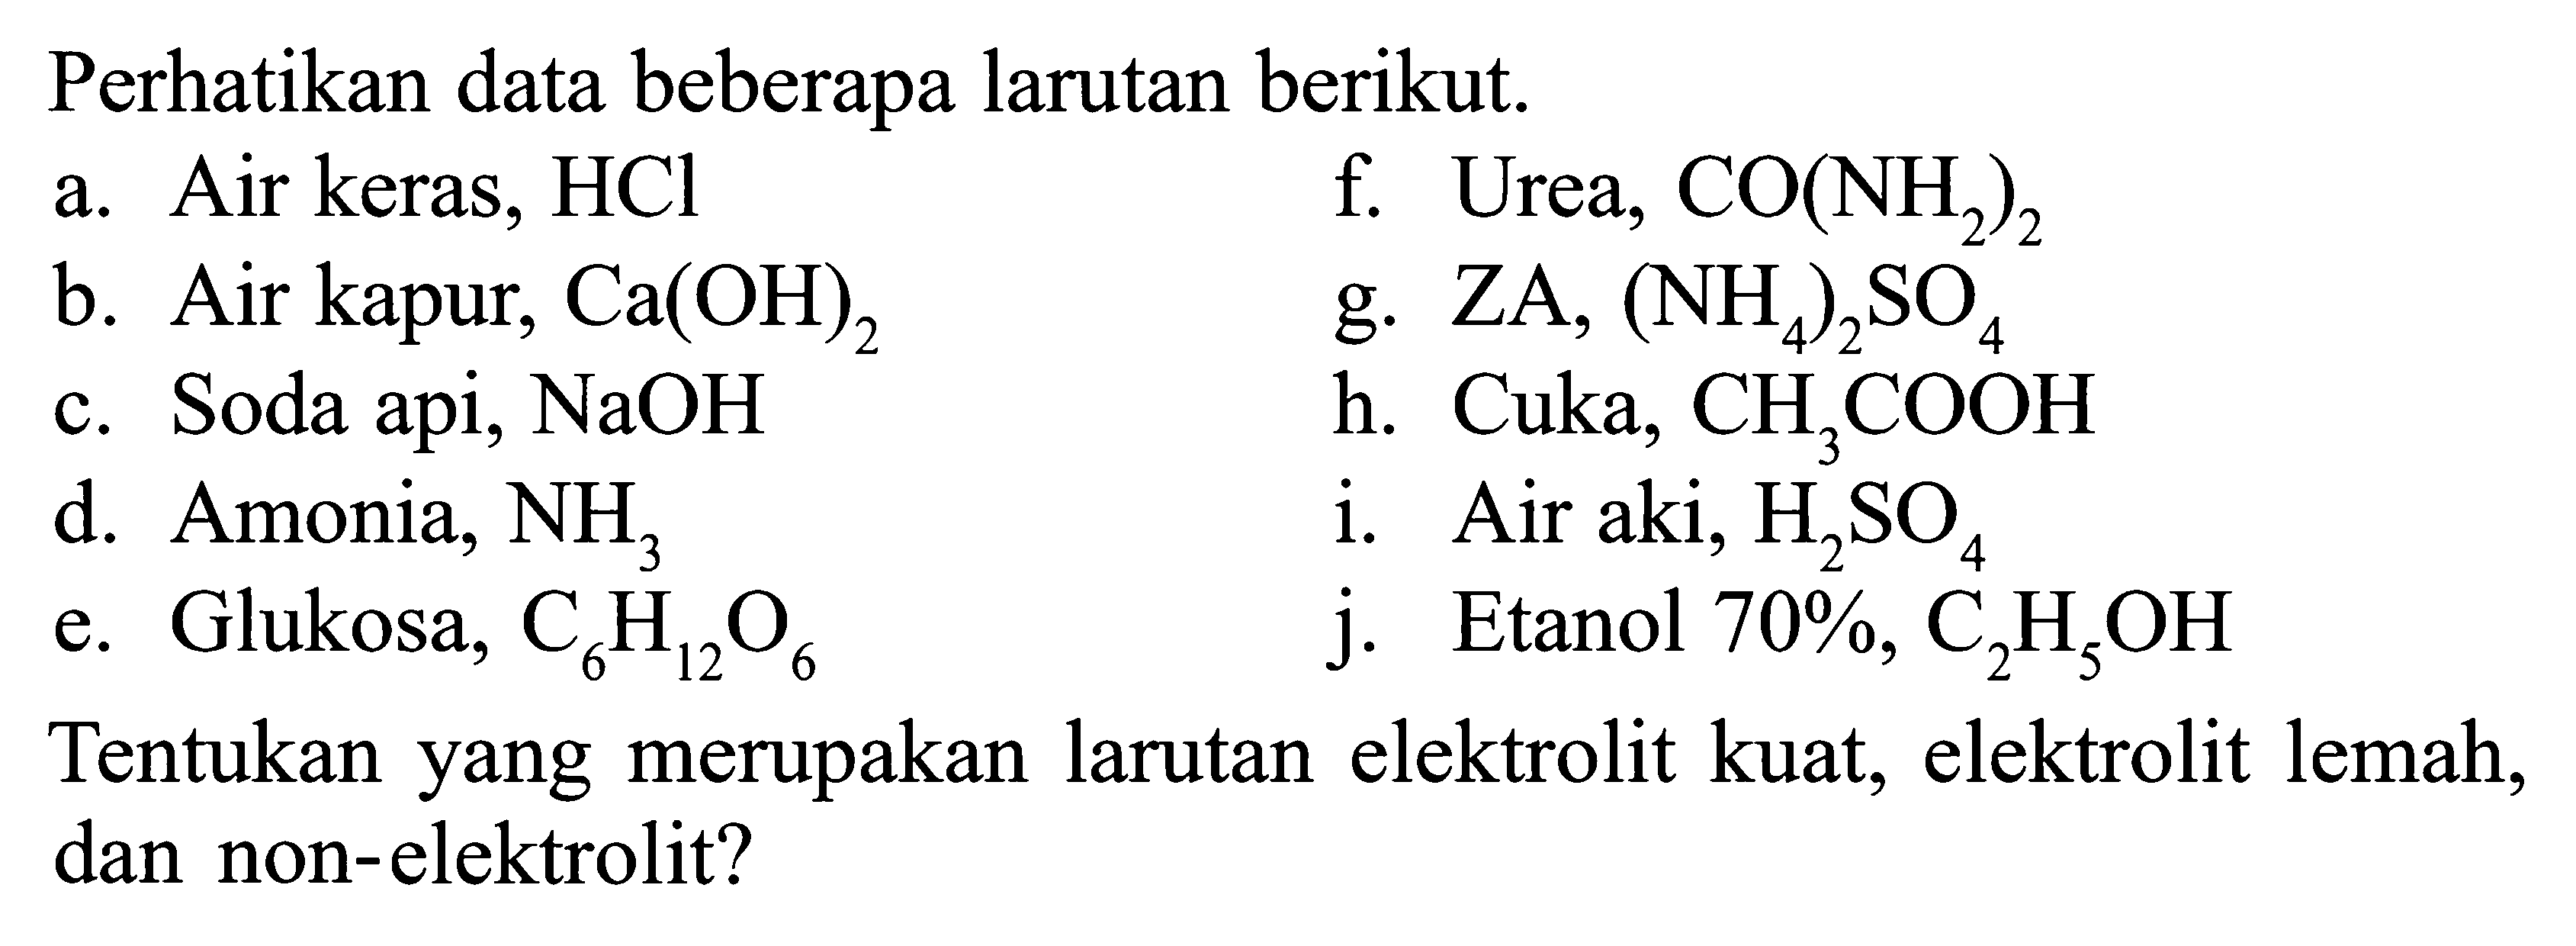 Perhatikan data beberapa larutan berikut.a. Air keras, HClf. Urea,  CO(NH/2)2 b. Air kapur,  Ca(OH)2 g.  ZA,(NH/4)2 SO/4 c. Soda api,  NaOH h.  Cuka, CH/3 COOH d. Amonia,  NH/3 i. Air aki,  H/2 SO/4 e. Glukosa,  C/6 H/12 O/6 j. Etanol 70%,  C/2 H/5 OH Tentukan yang merupakan larutan elektrolit kuat, elektrolit lemah, dan non-elektrolit?